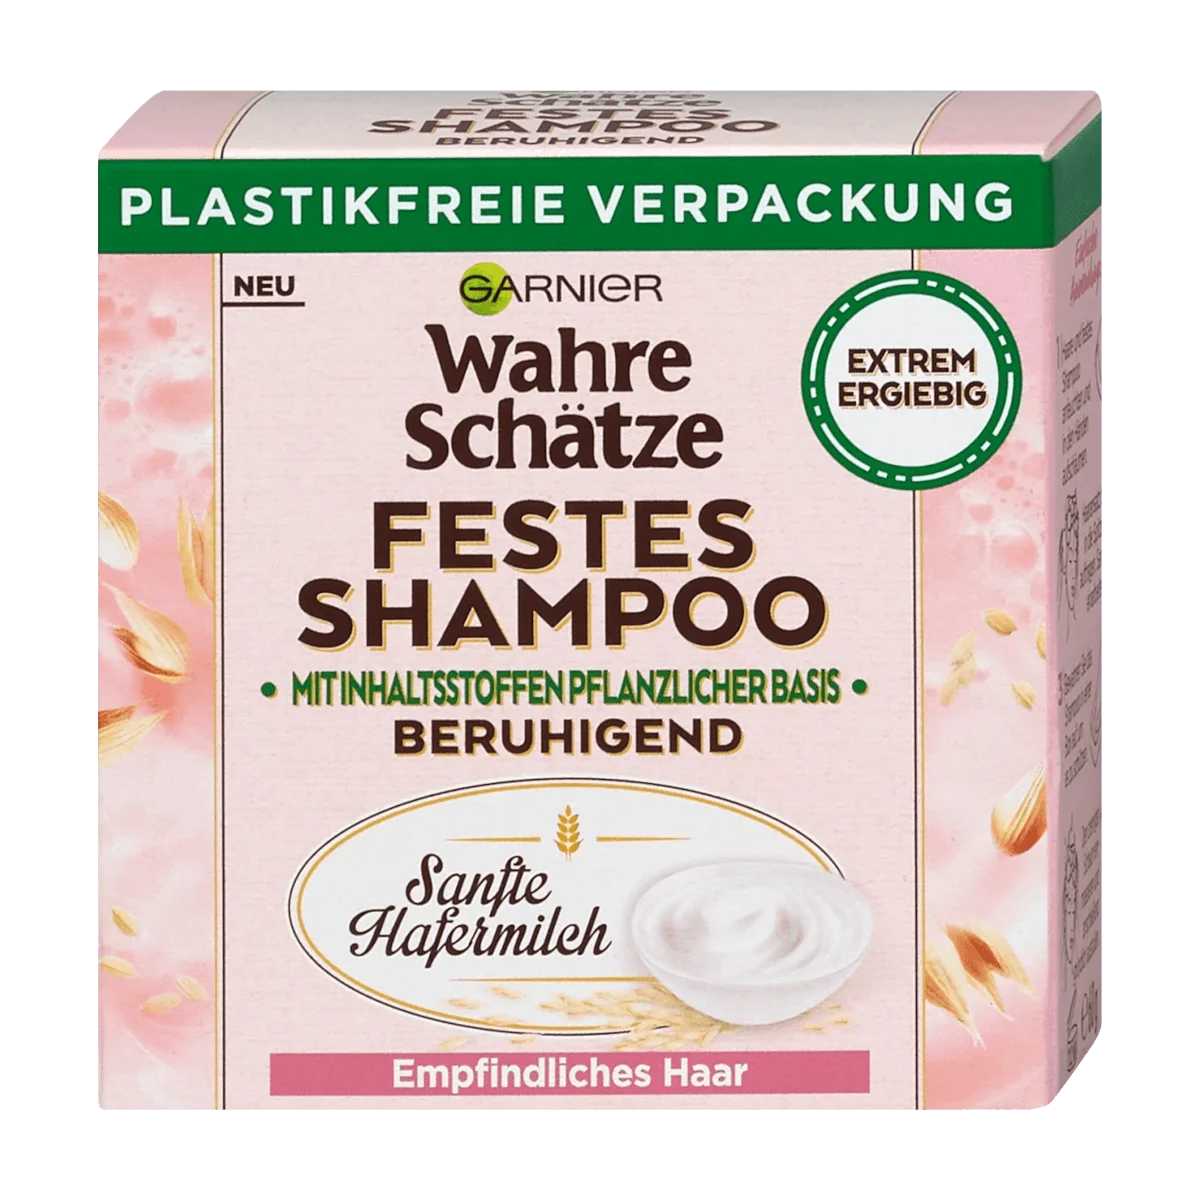 Garnier Wahre Schätze Festes Shampoo Sanfte Hafermilch, 60 g